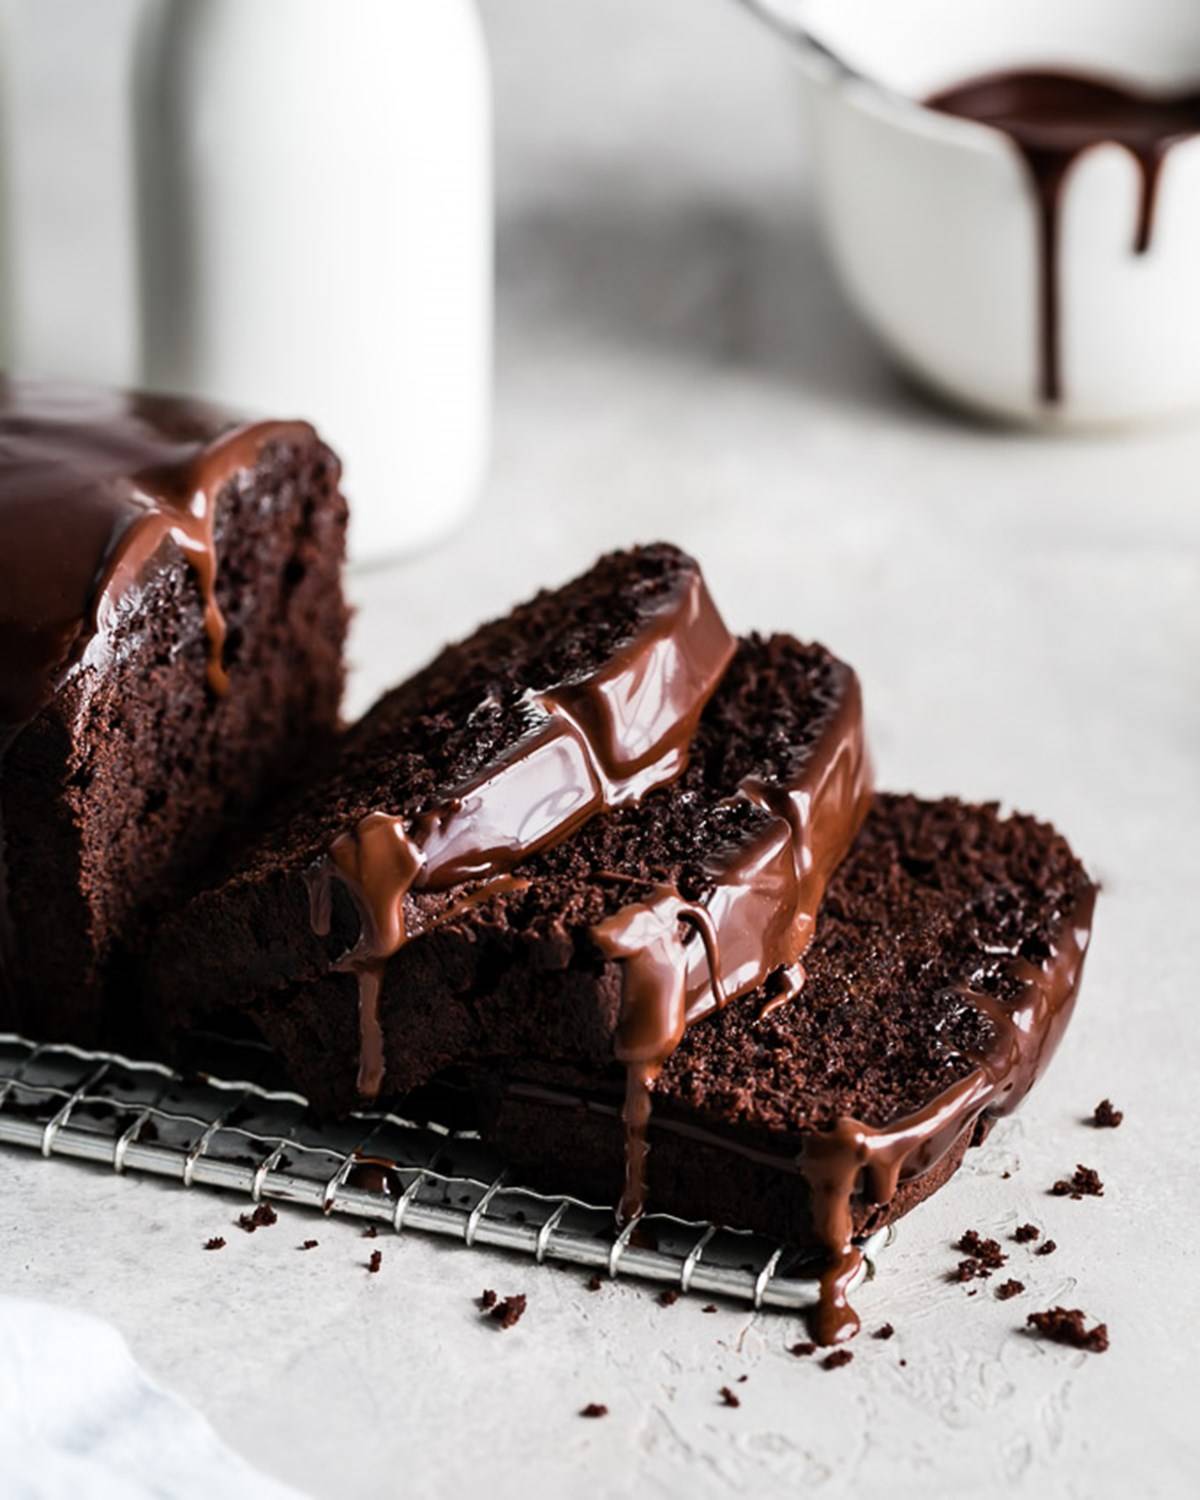 Gluten-free Chocolate cake